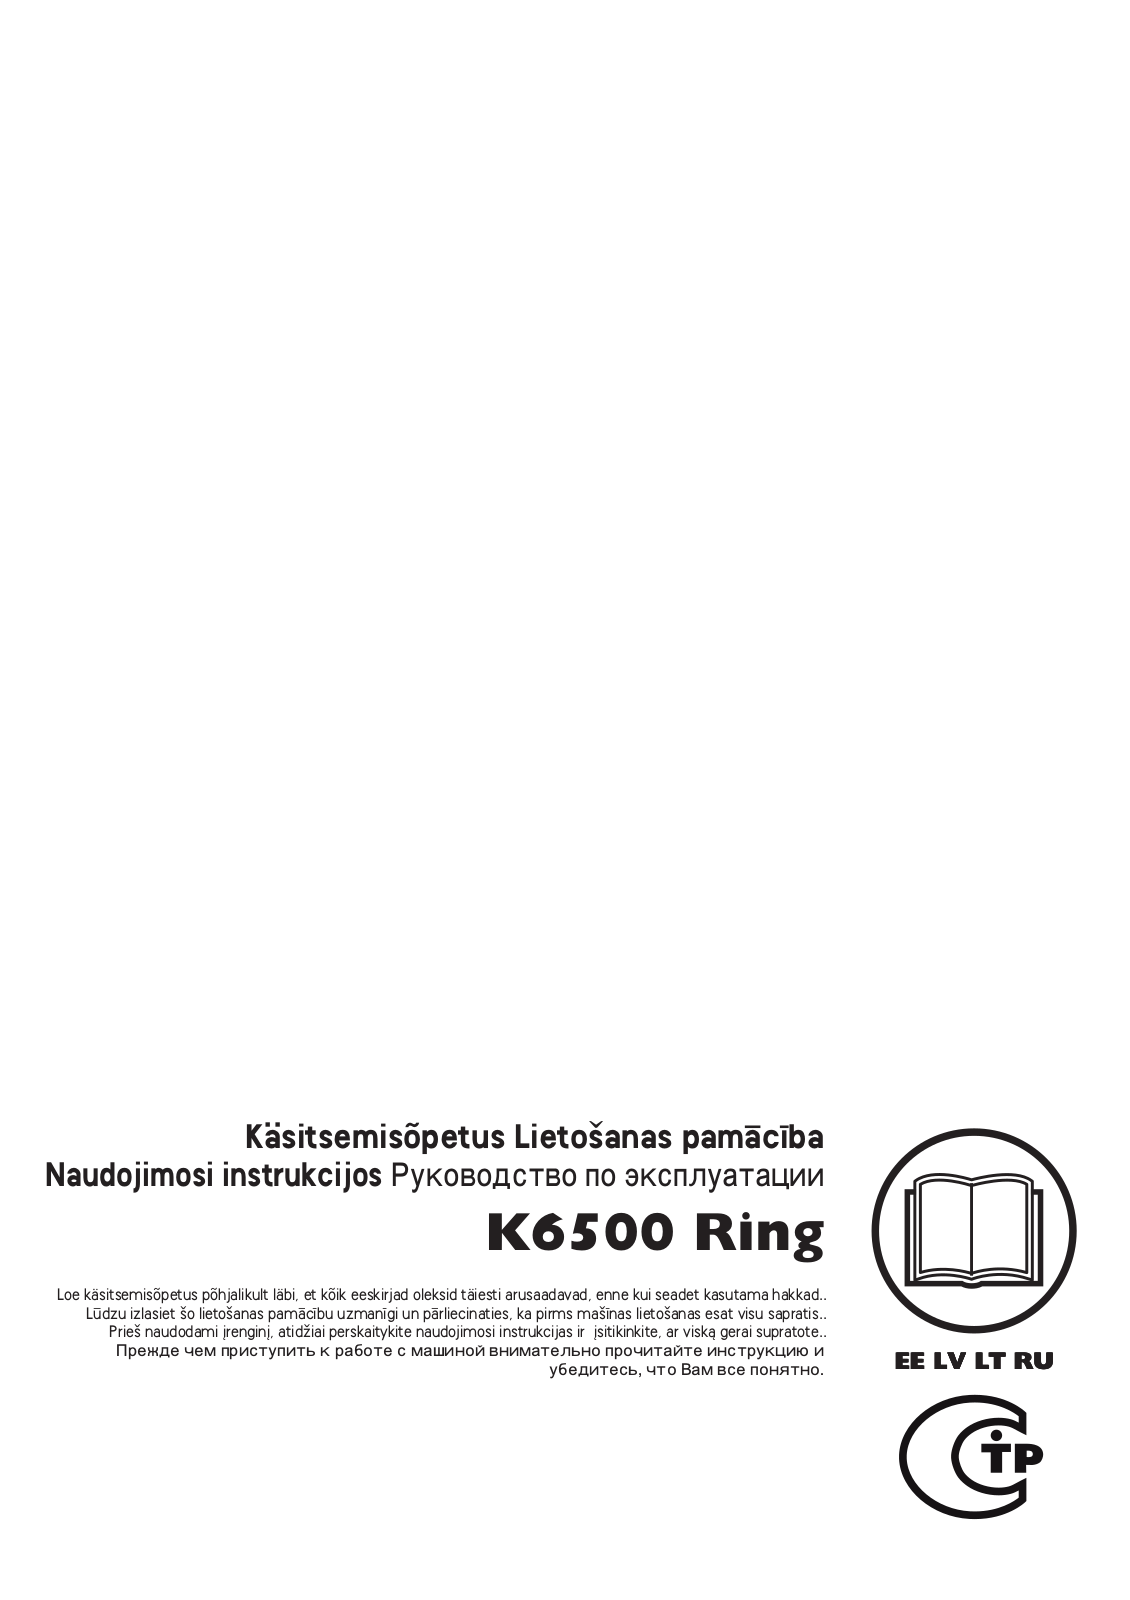 HUSQVARNA K6500 Ring User Manual